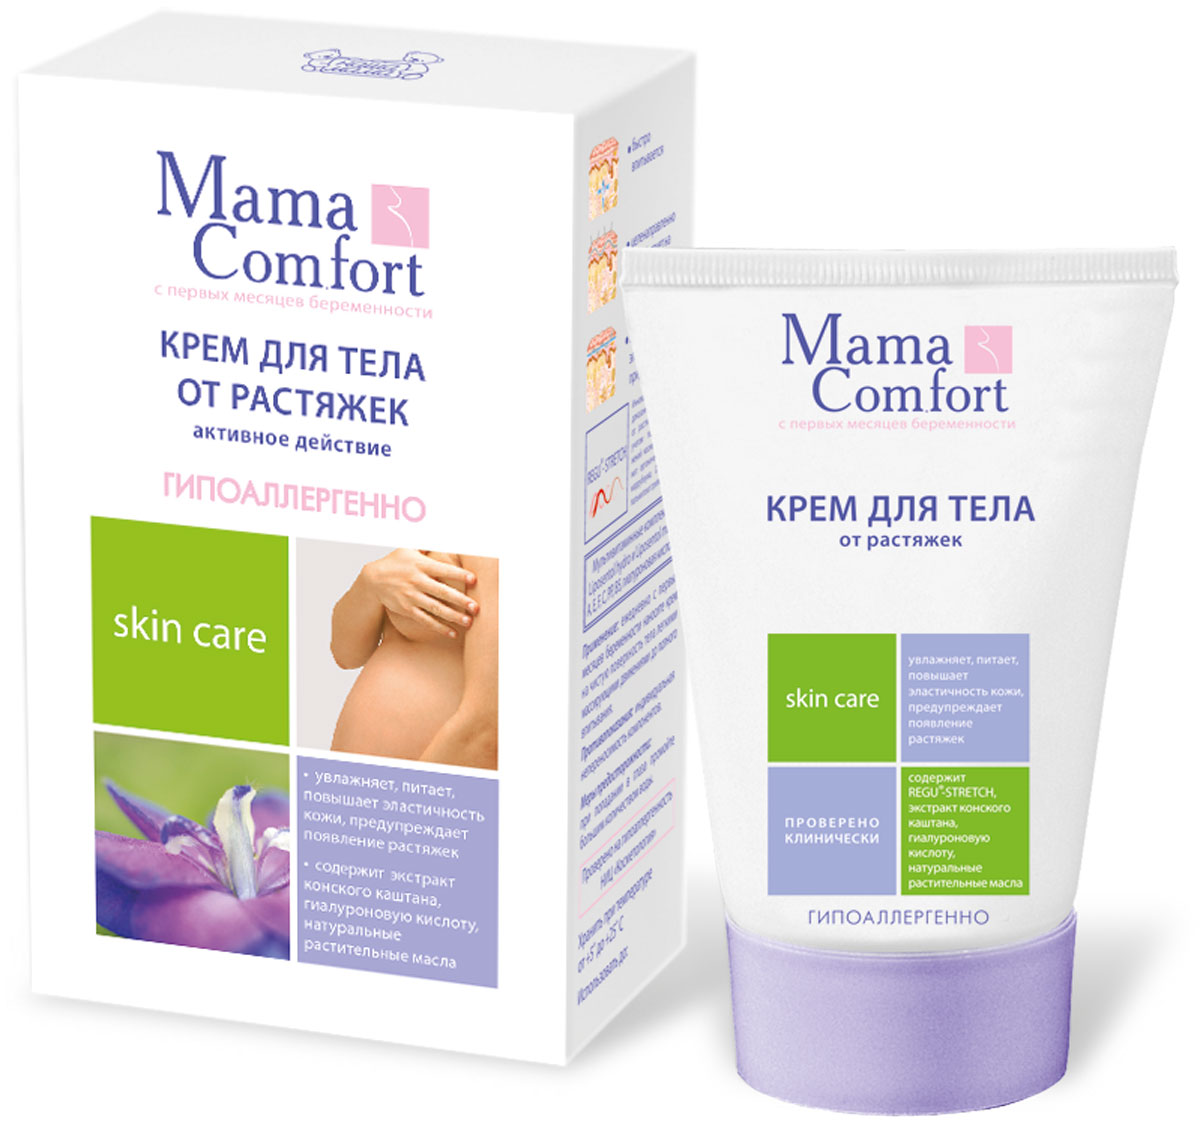 Mama Comfort Крем для тела от растяжек, 100 мл